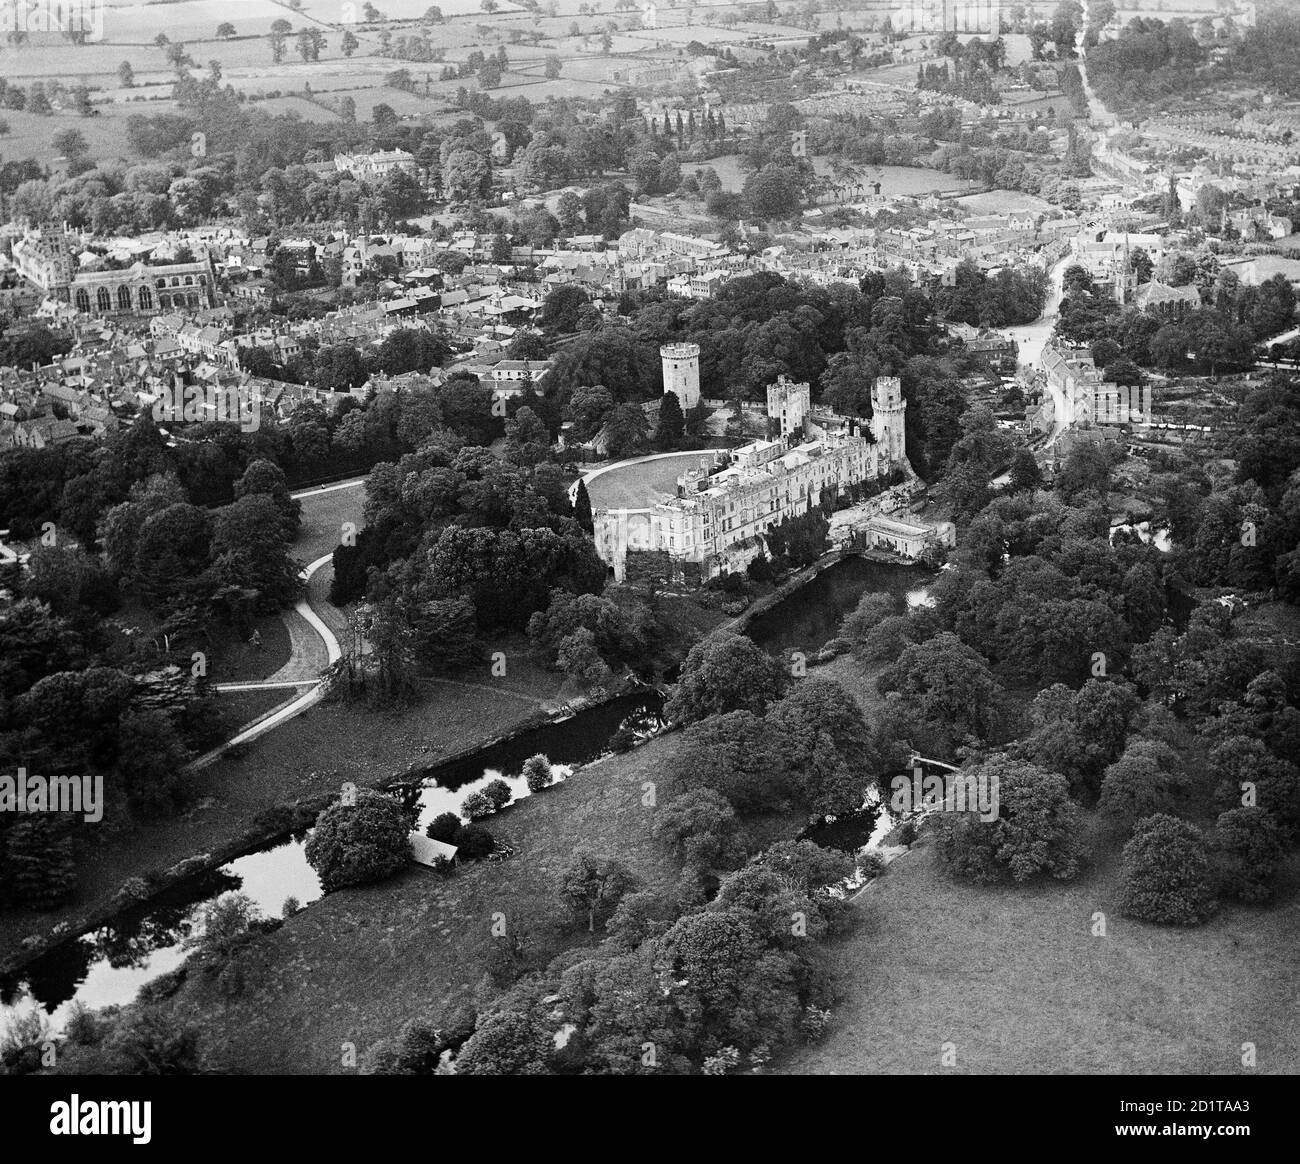 WARWICK CASTLE, Warwickshire. Luftaufnahme des Schlosses und des Flusses Avon im Vordergrund, mit der Kirche und der Stadt dahinter. Fotografiert im Jahr 1920. Aerofilms Collection (siehe Links). Stockfoto